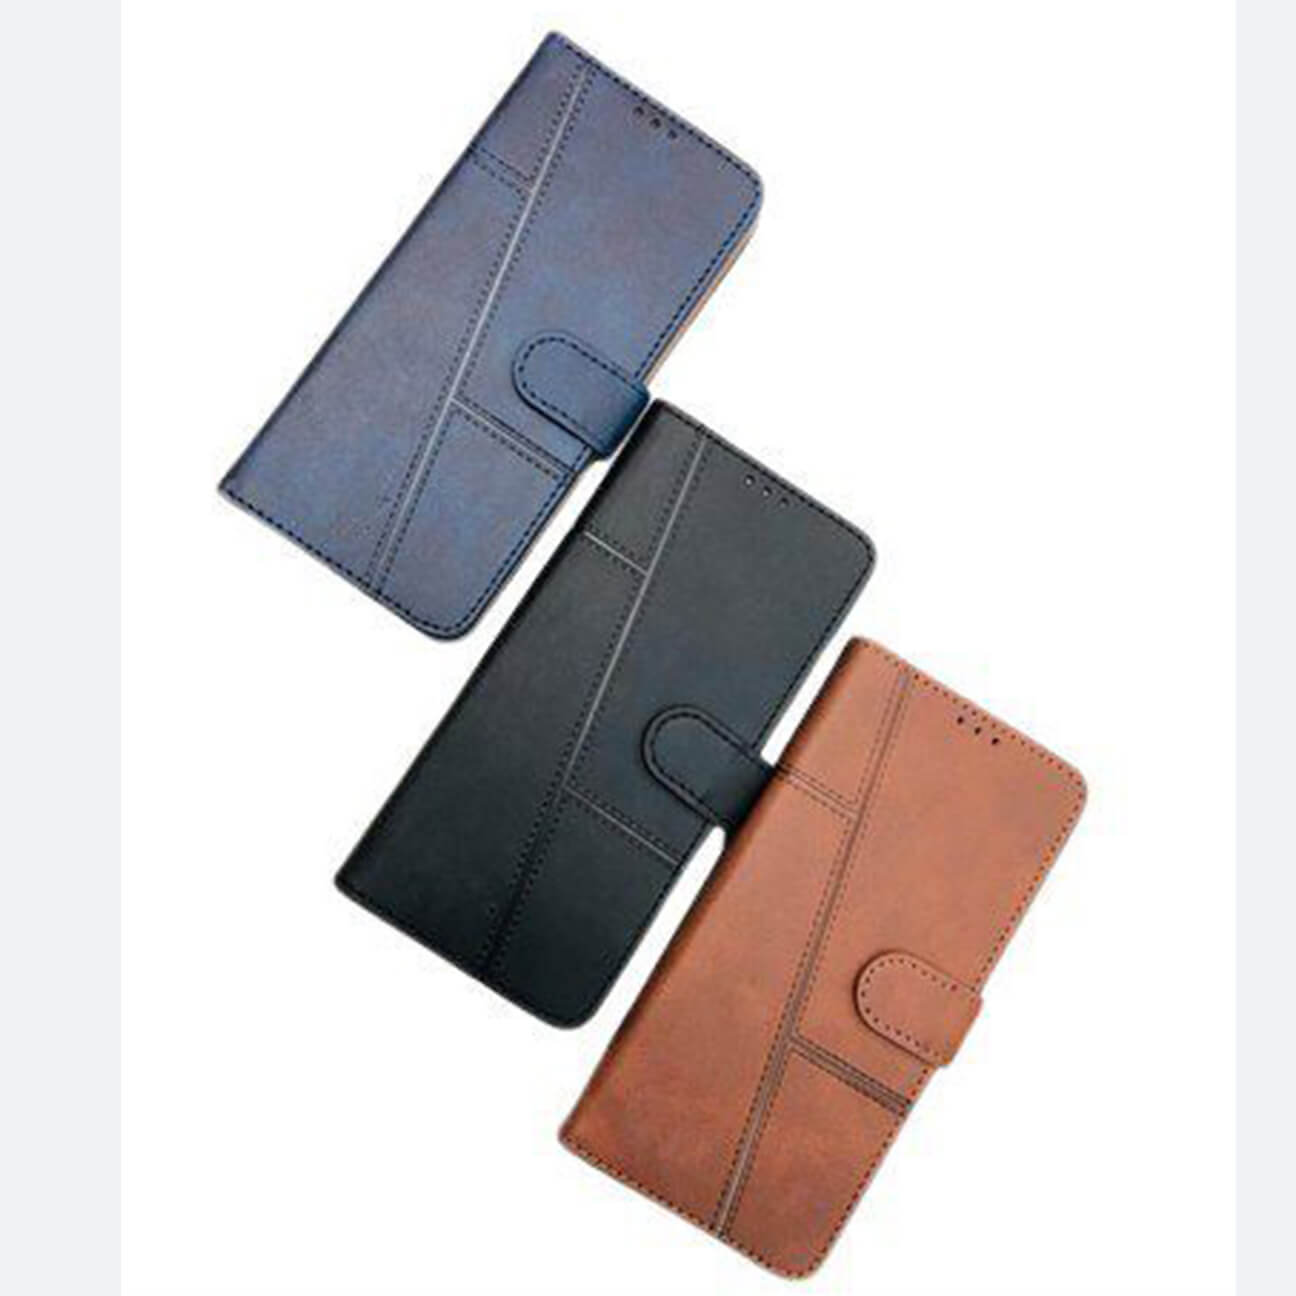 Redmi Note 7S Flip Cover